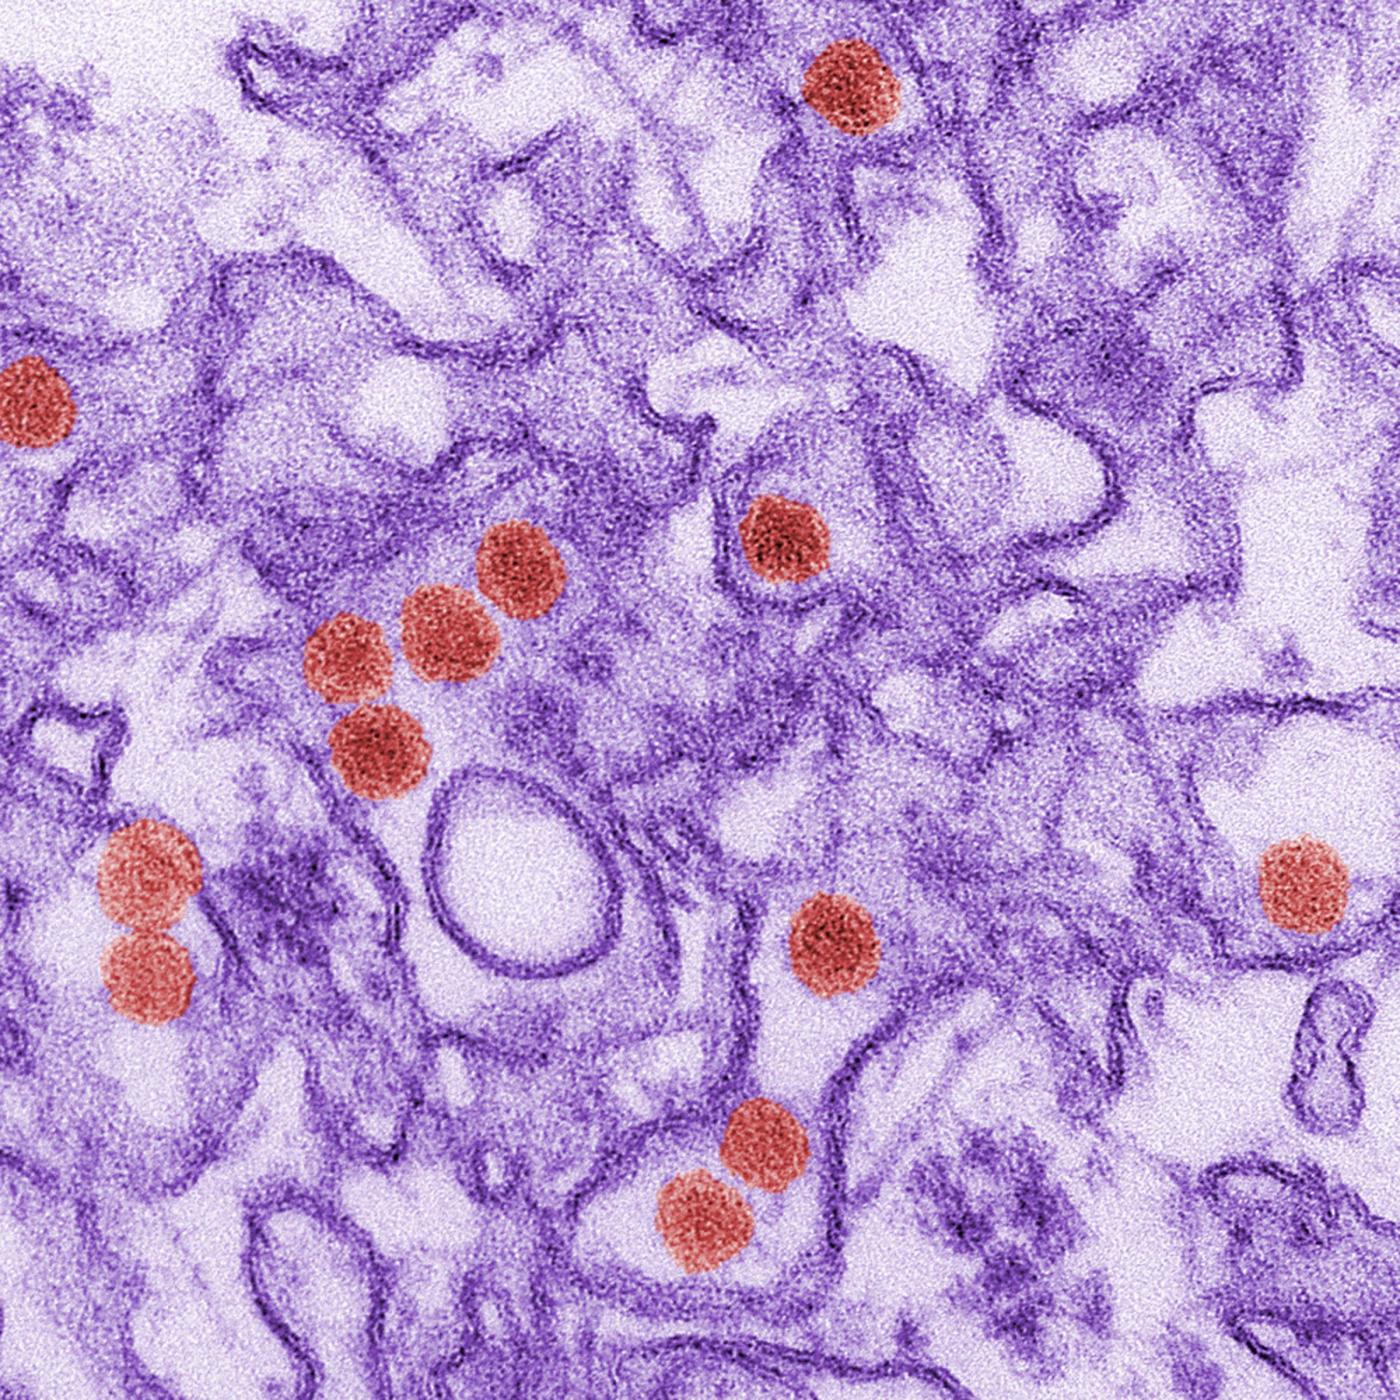 Il virus Zika causa microcefalia, la conferma arriva dagli USA